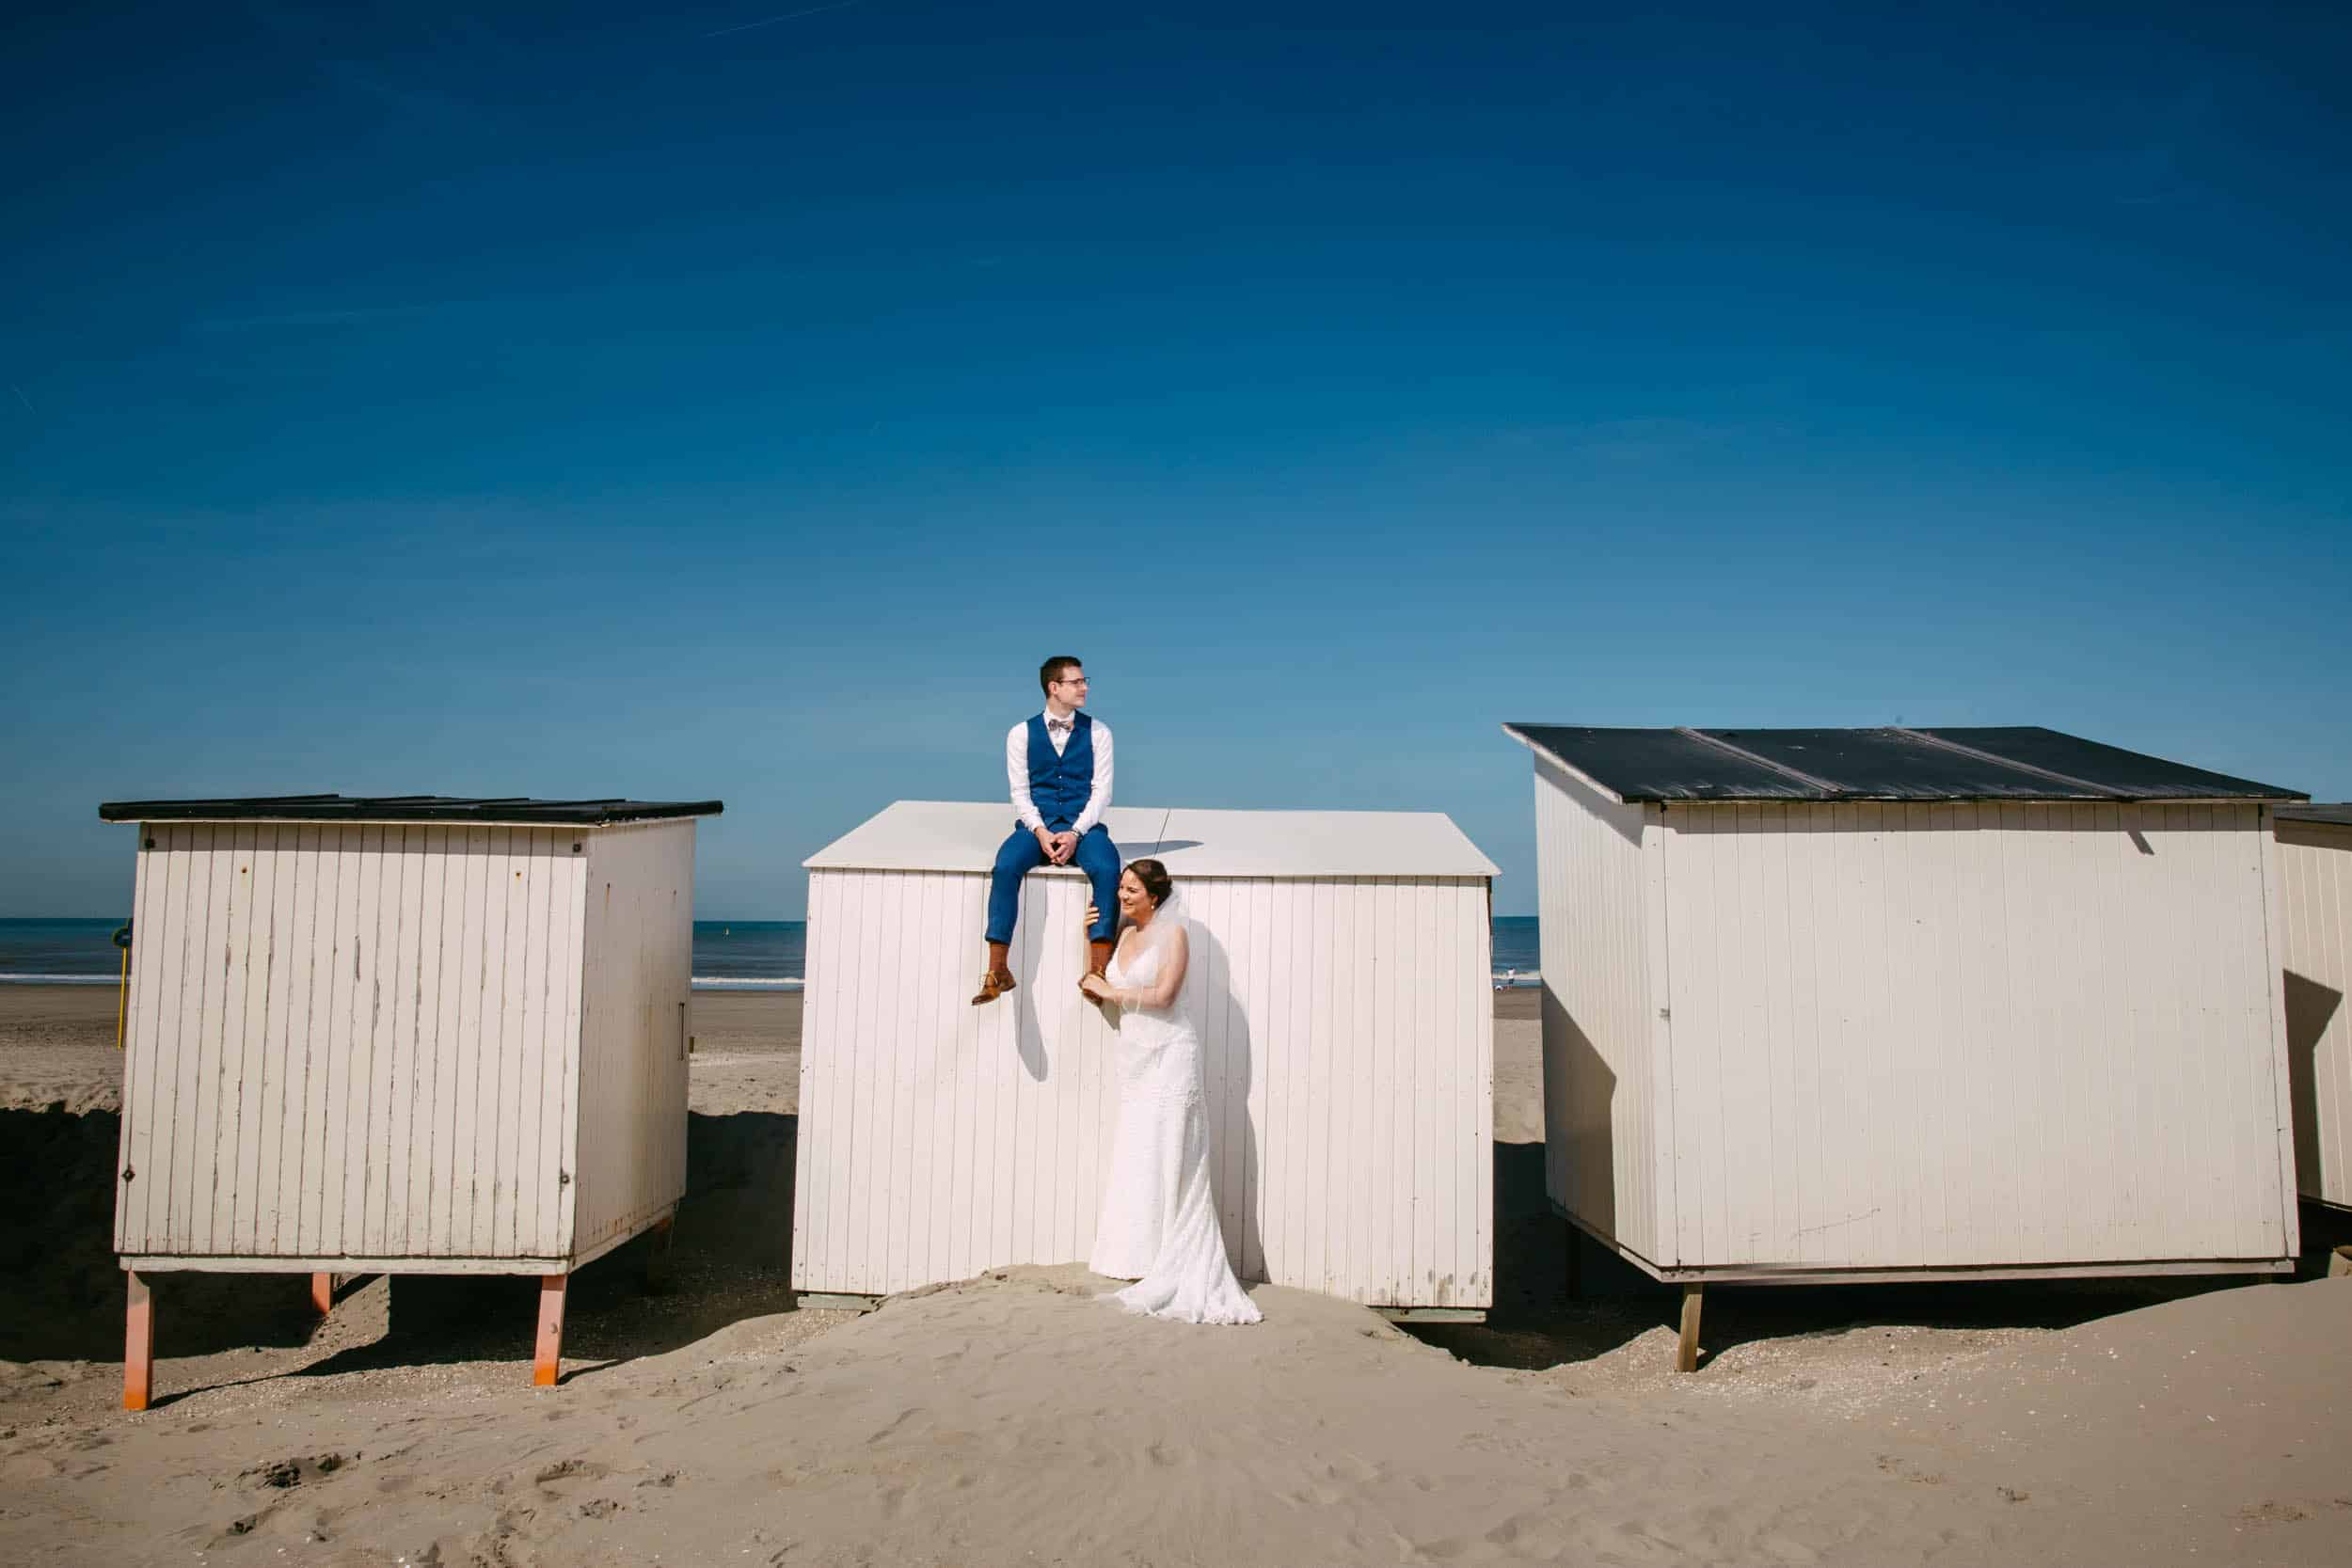 Een bruid en bruidegom die bovenop strandhutten staan en de charmante elementen van een bruiloft aan zee vastleggen.